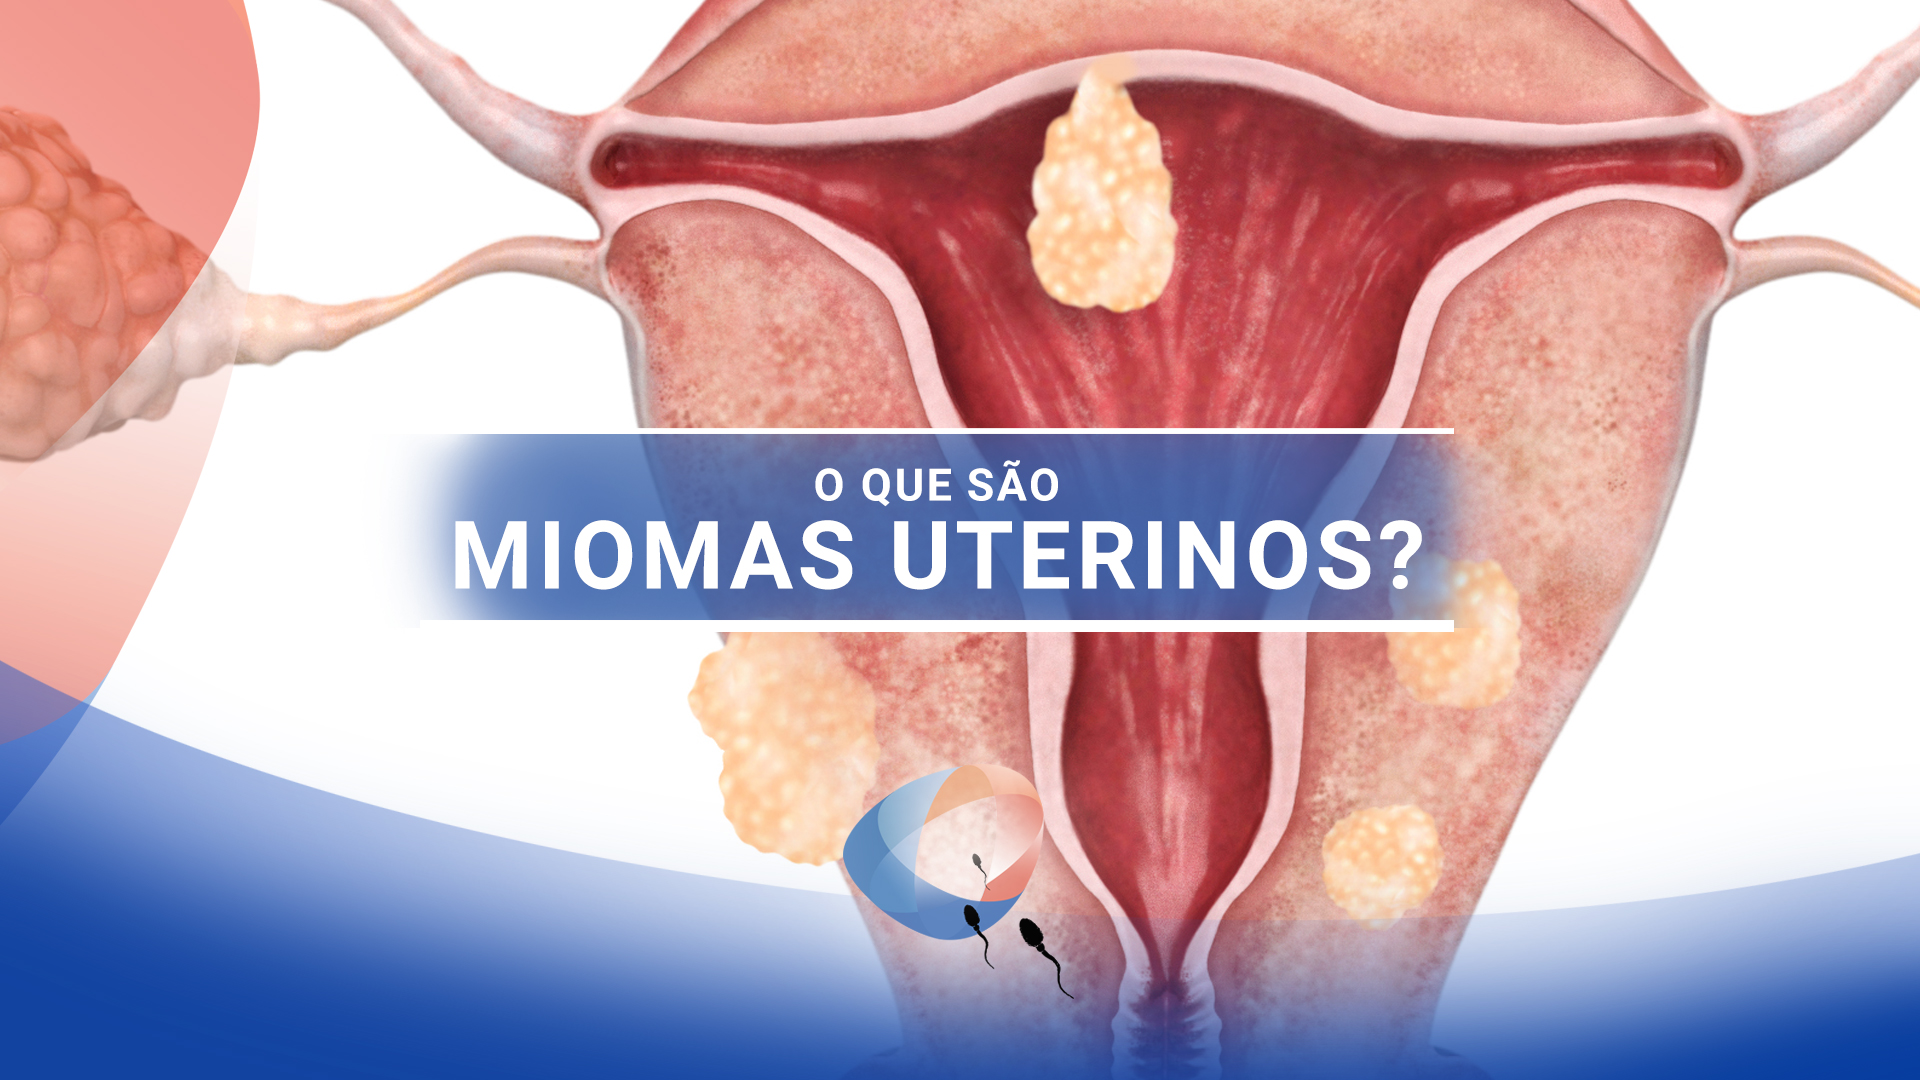 O que são miomas uterinos?